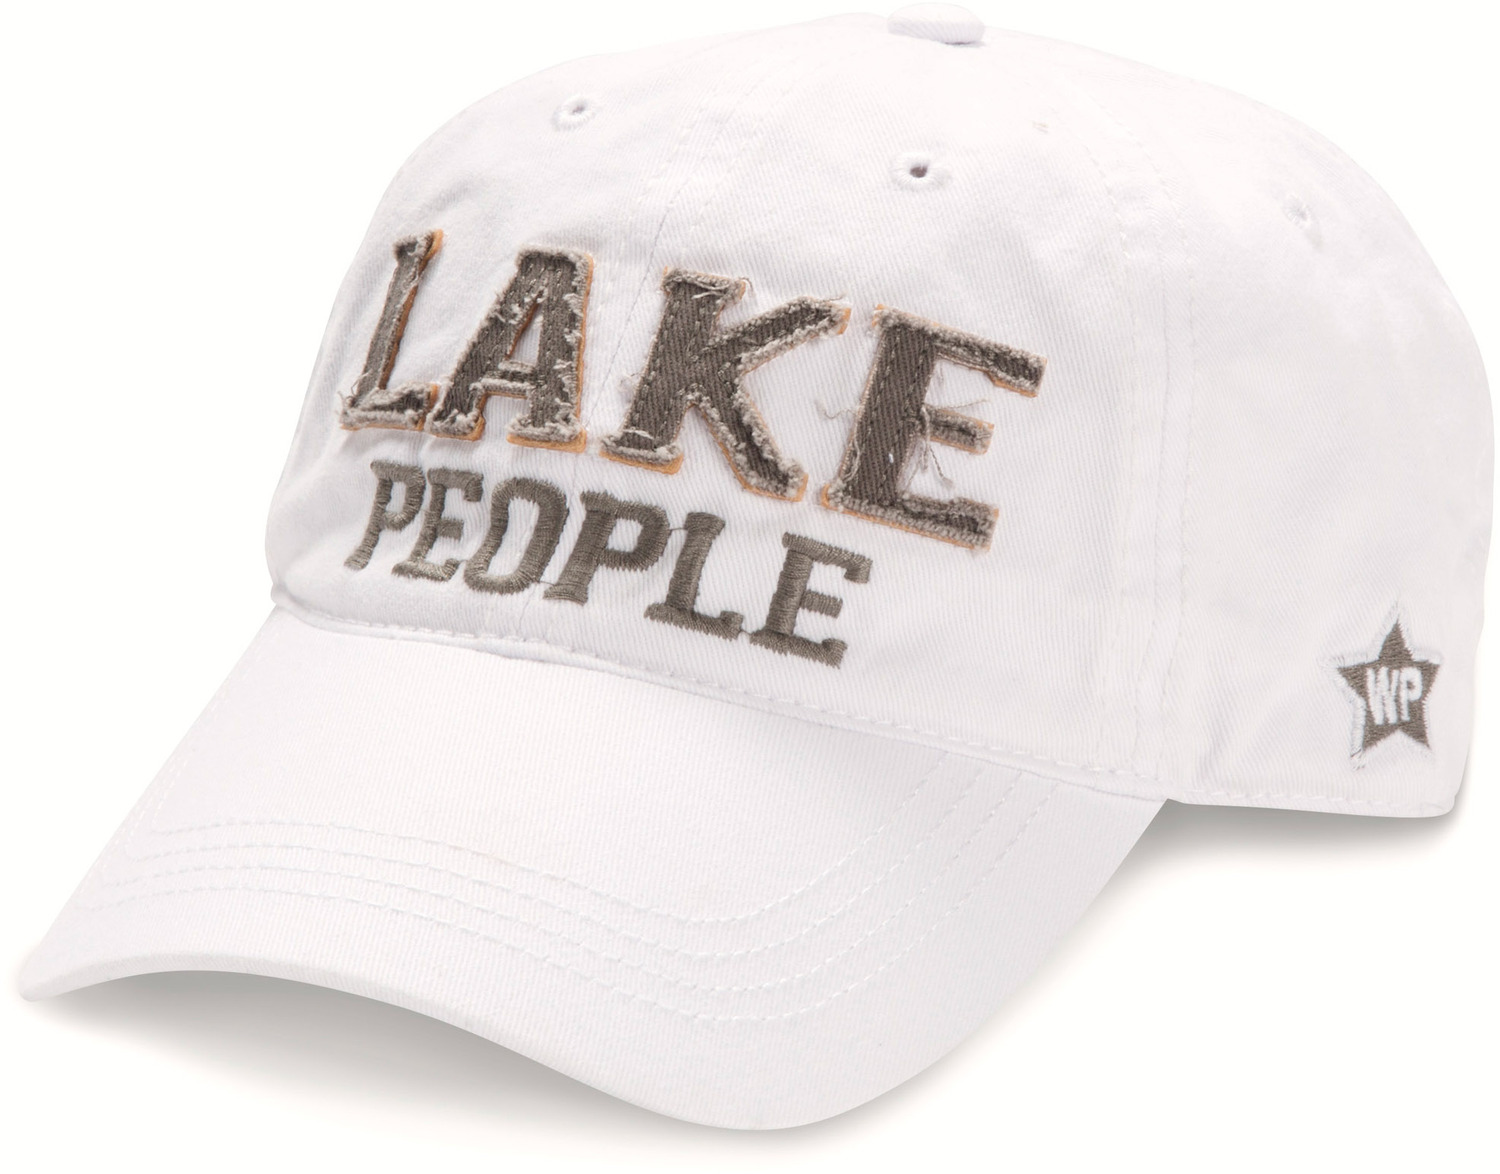 Lake People, White Adjustable Hat - We People - Pavilion